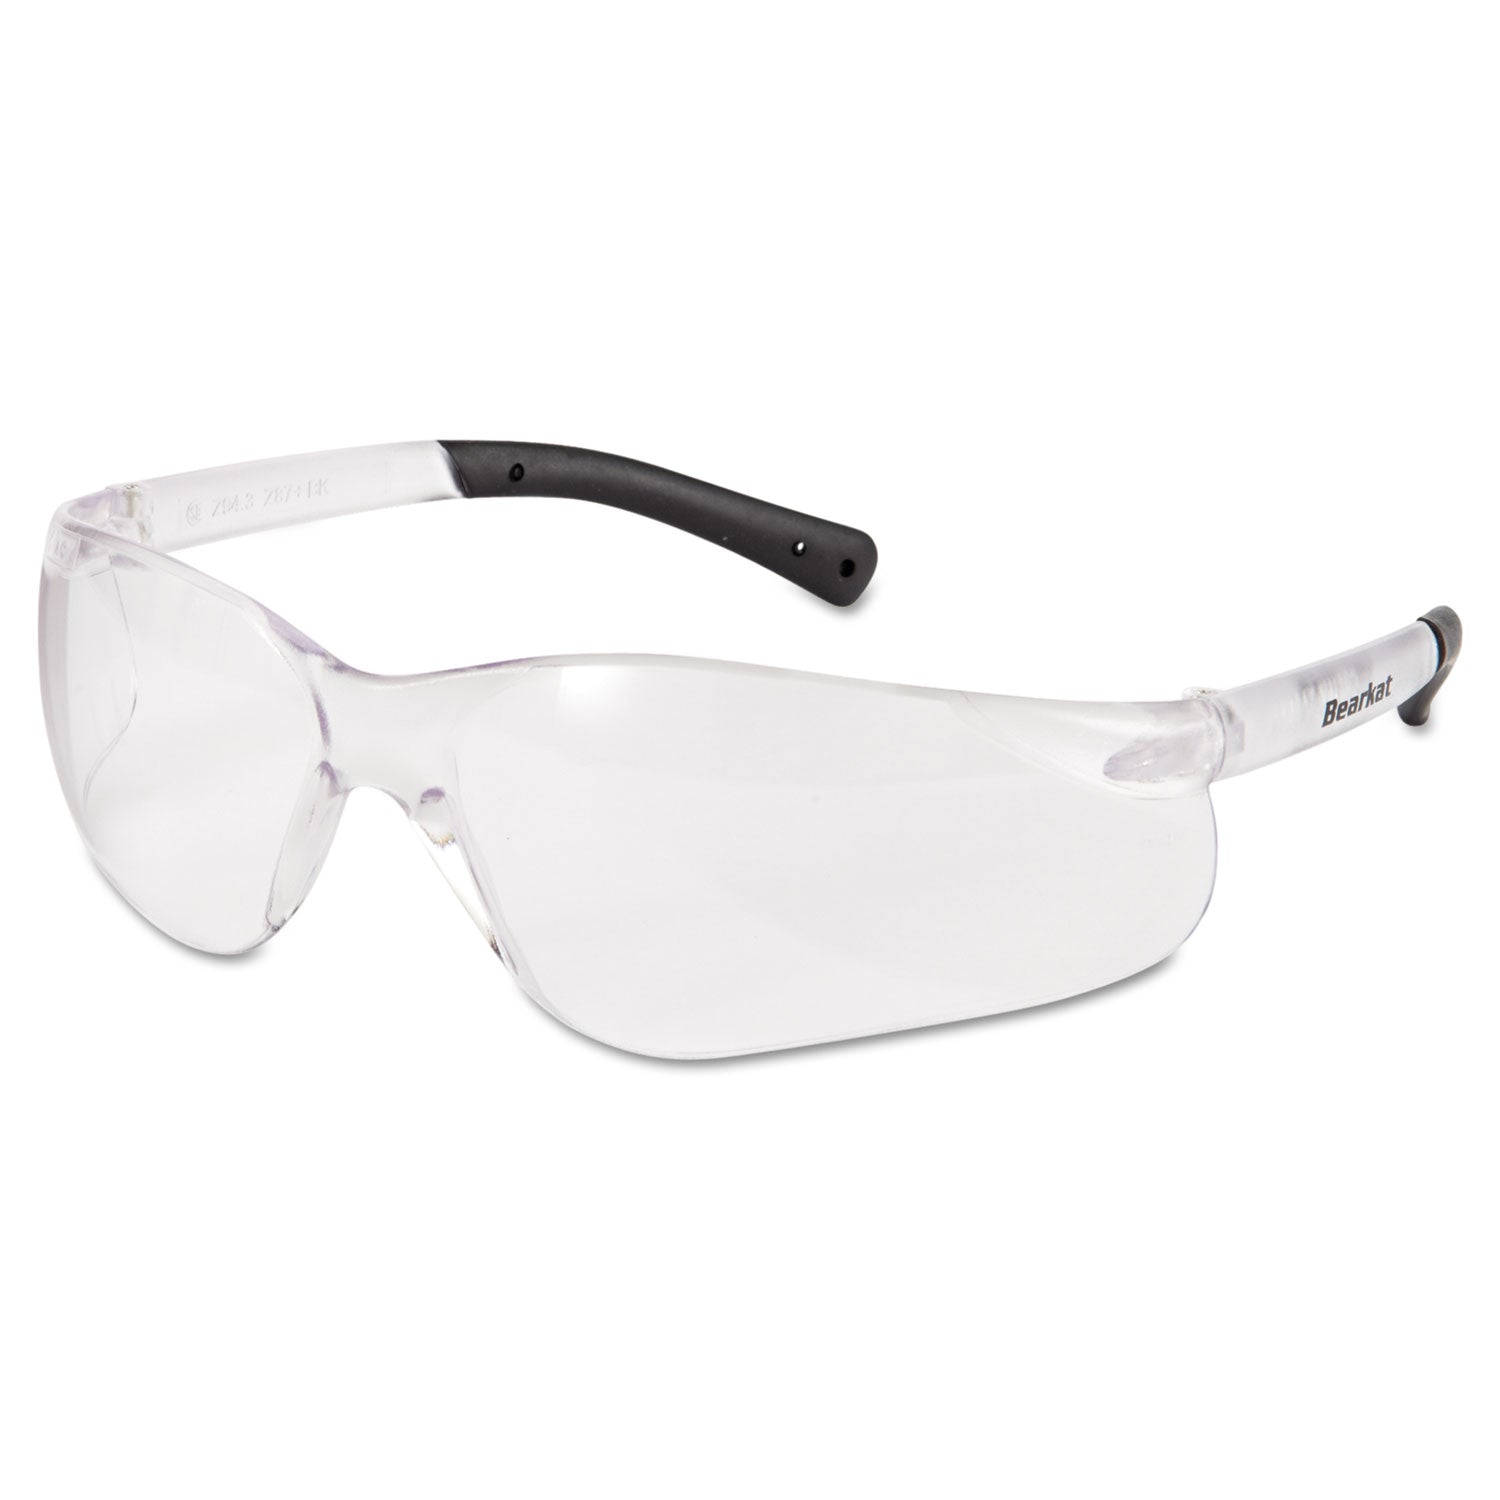 BearKat Safety Glasses, Frost Frame, Clear Lens - 